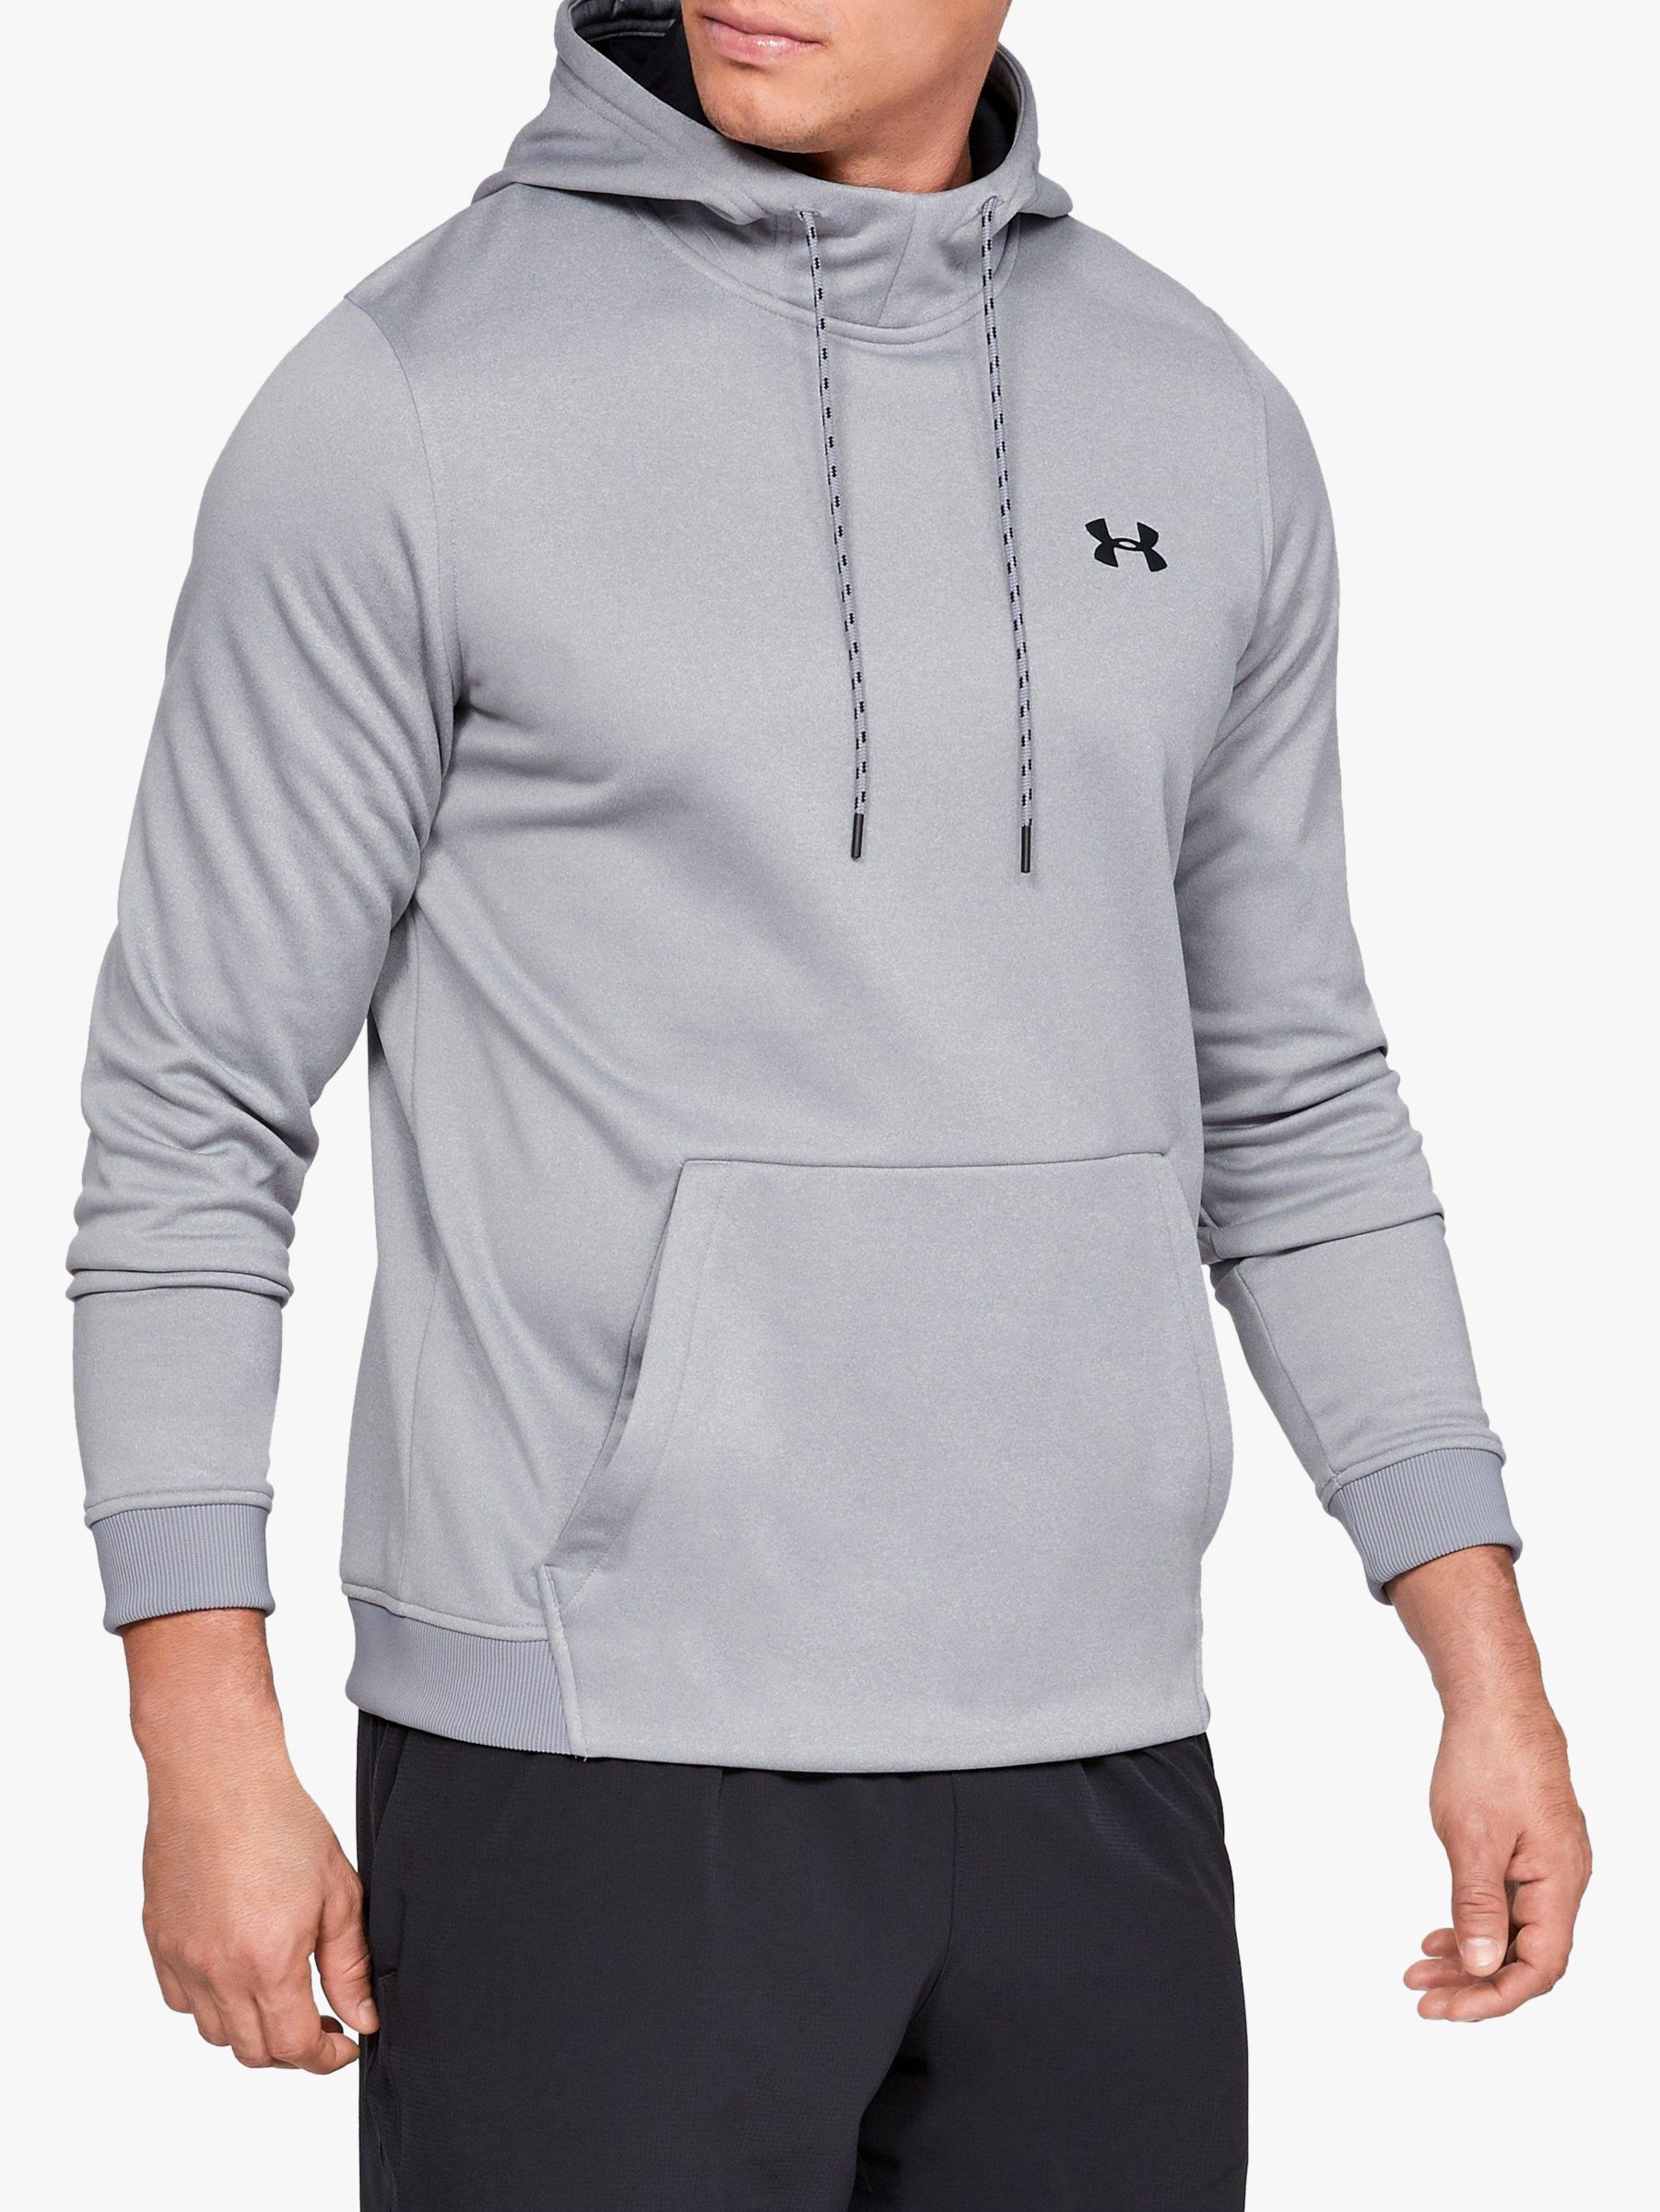 grey under armor hoodie